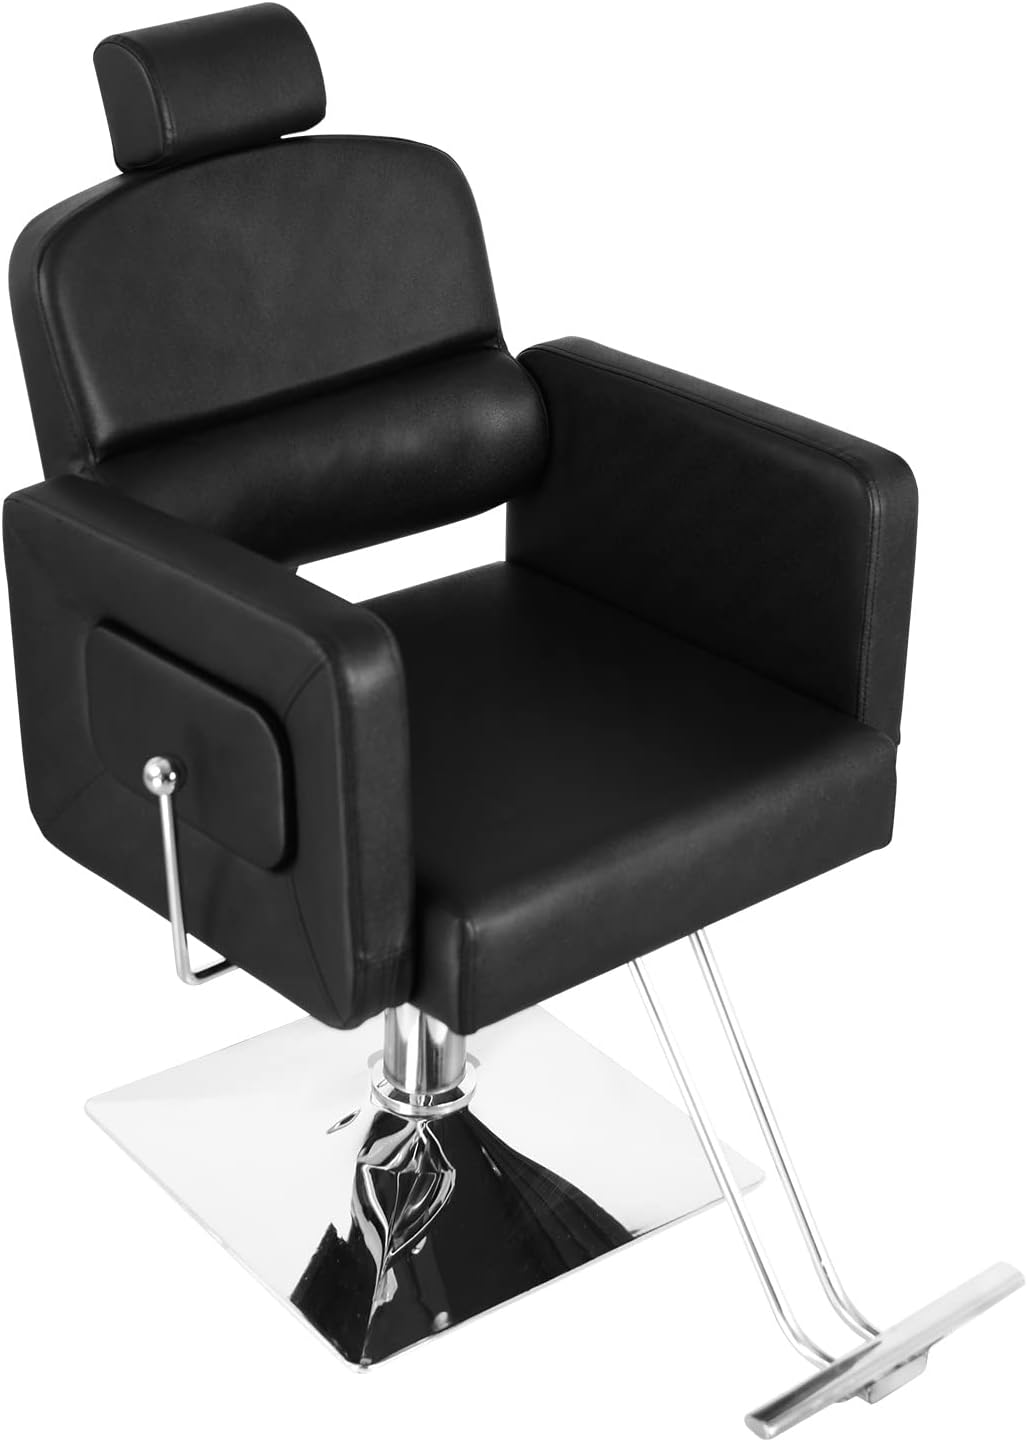 Silla de salón reclinable disponible valor de la silla 11,000